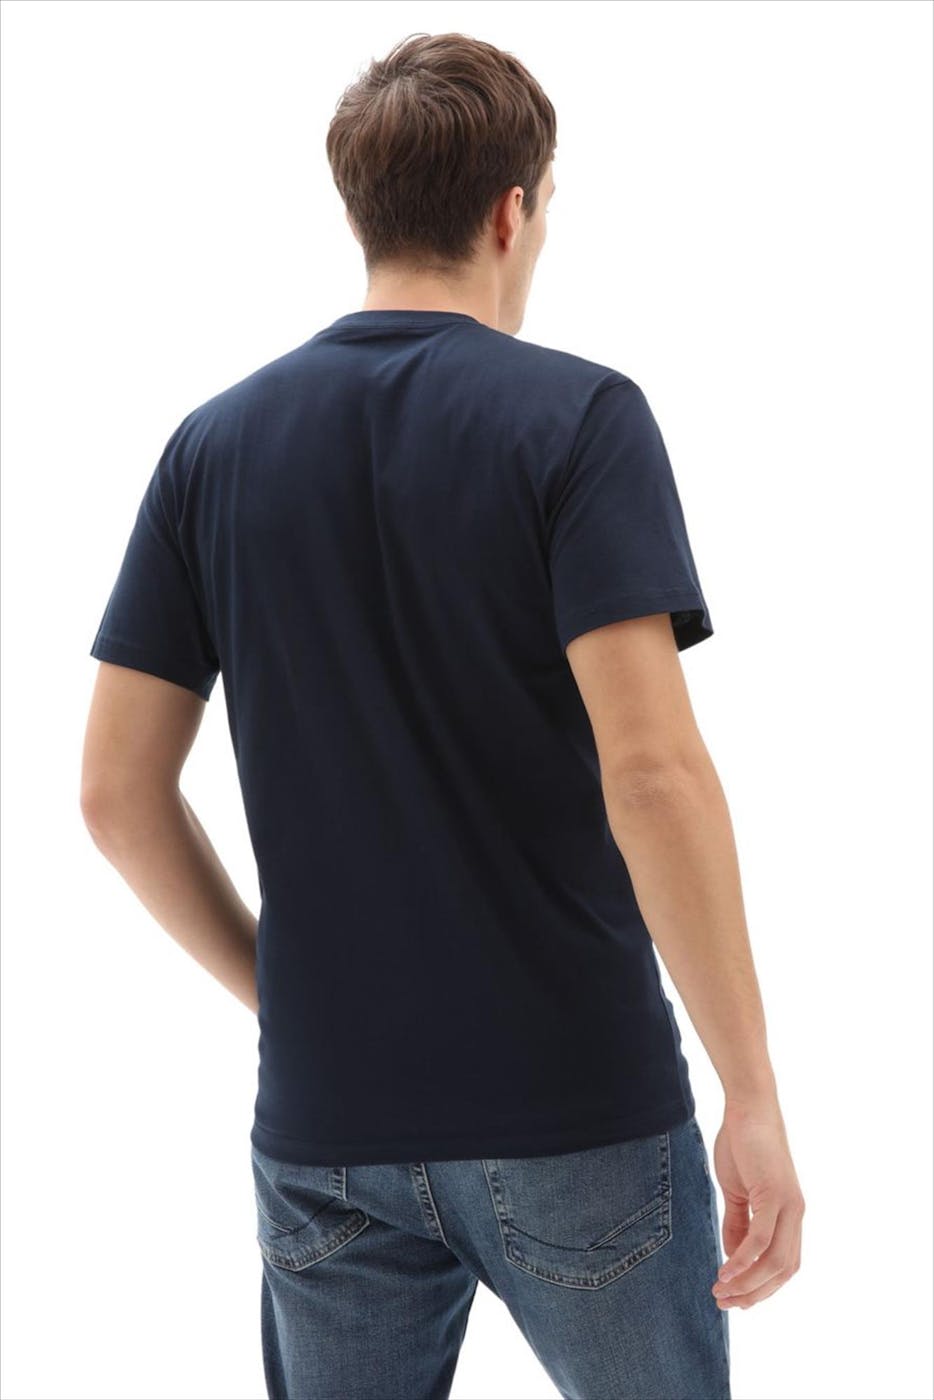 Vans  - Donkerblauwe Classic T-shirt